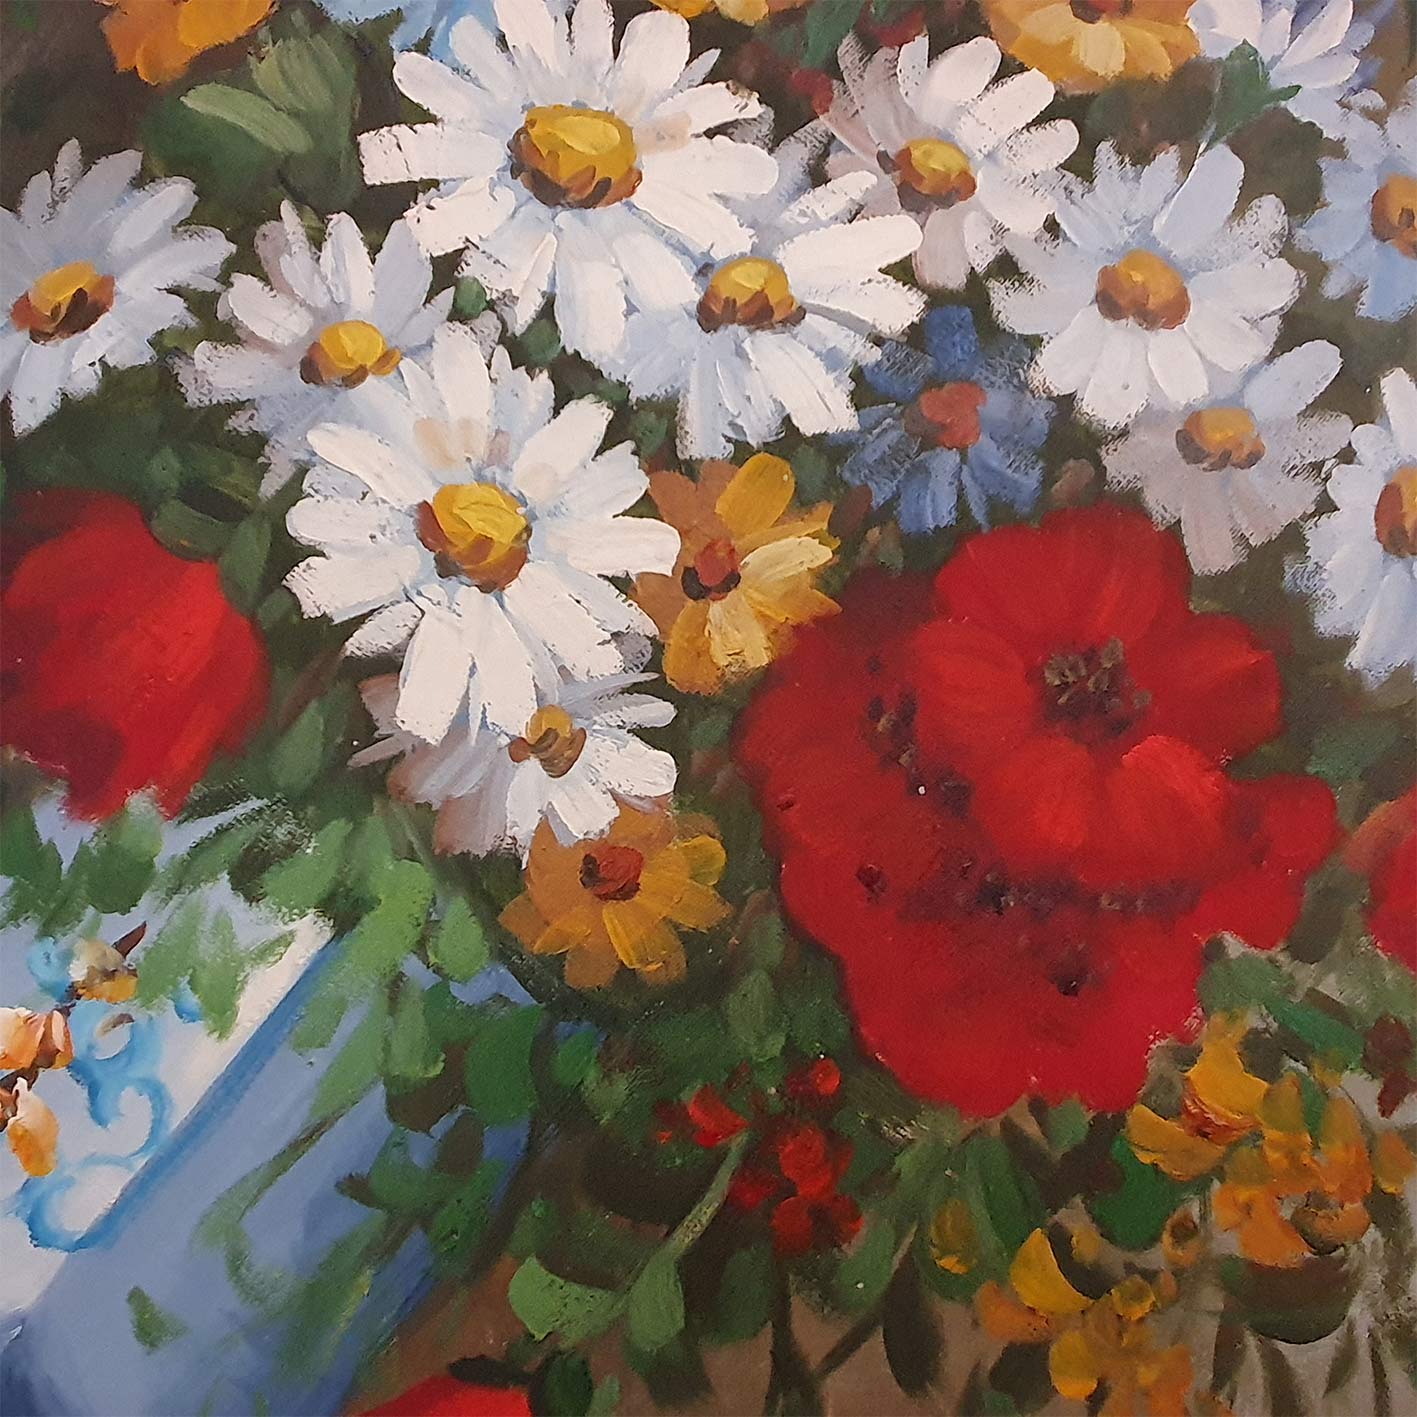 Vintage Flower Vase Painting 50x60 cm [2 pieces]